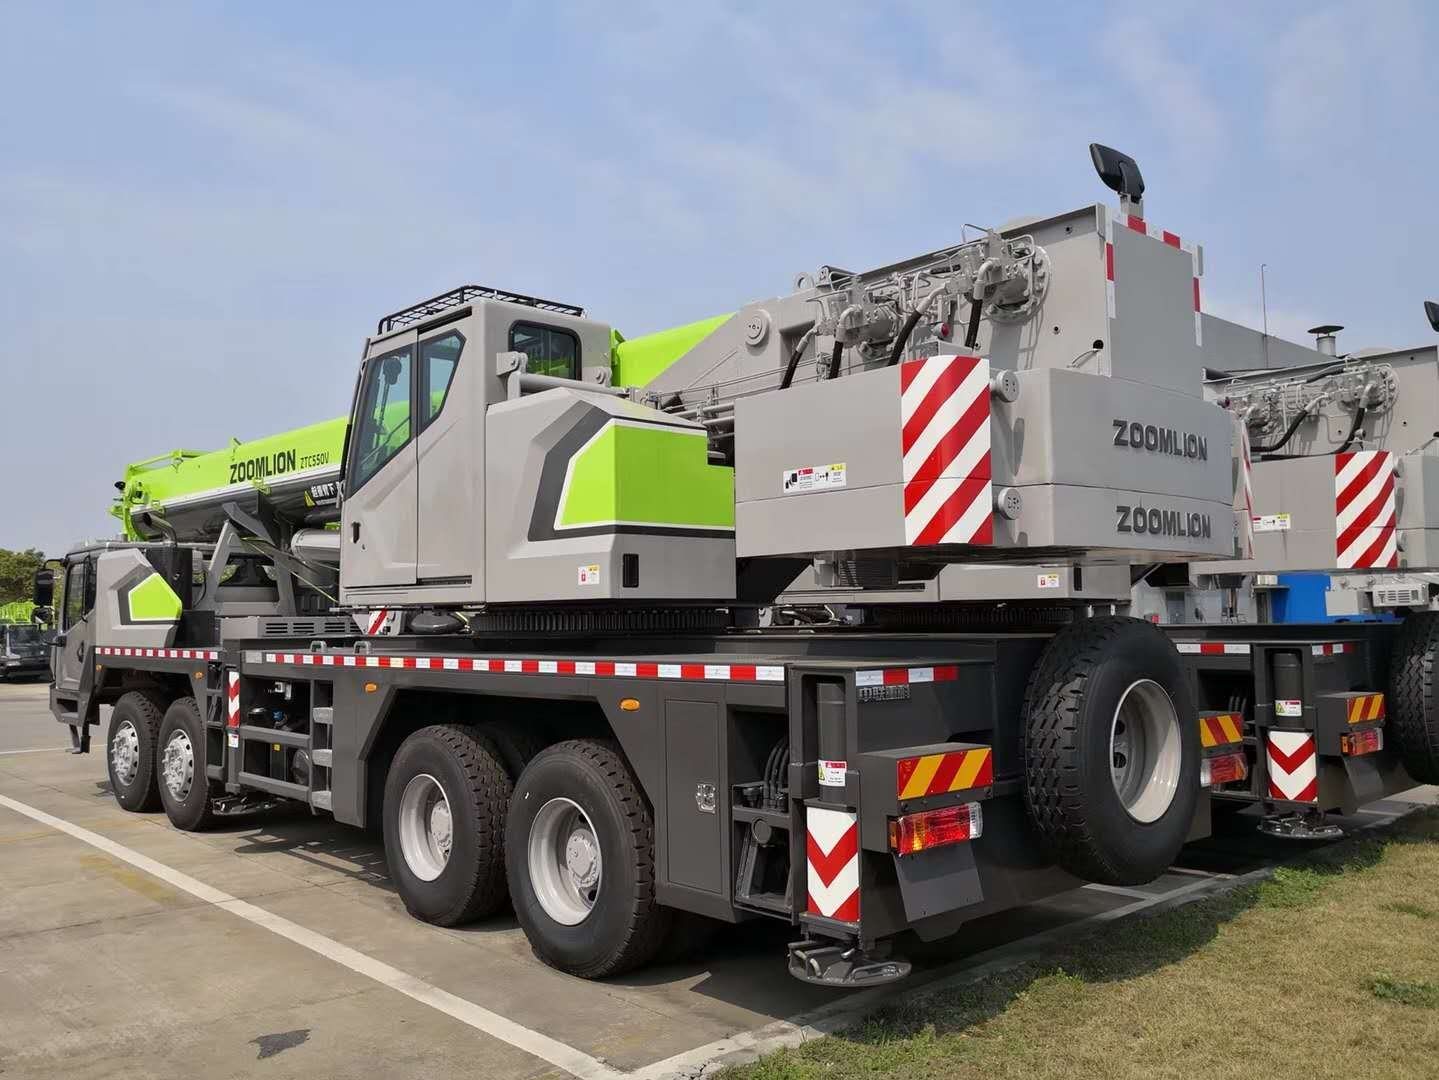 
                Zoomlion mittlere Größe 50 Tonnen LKW Kran Ztc500A562 mit große Preis
            